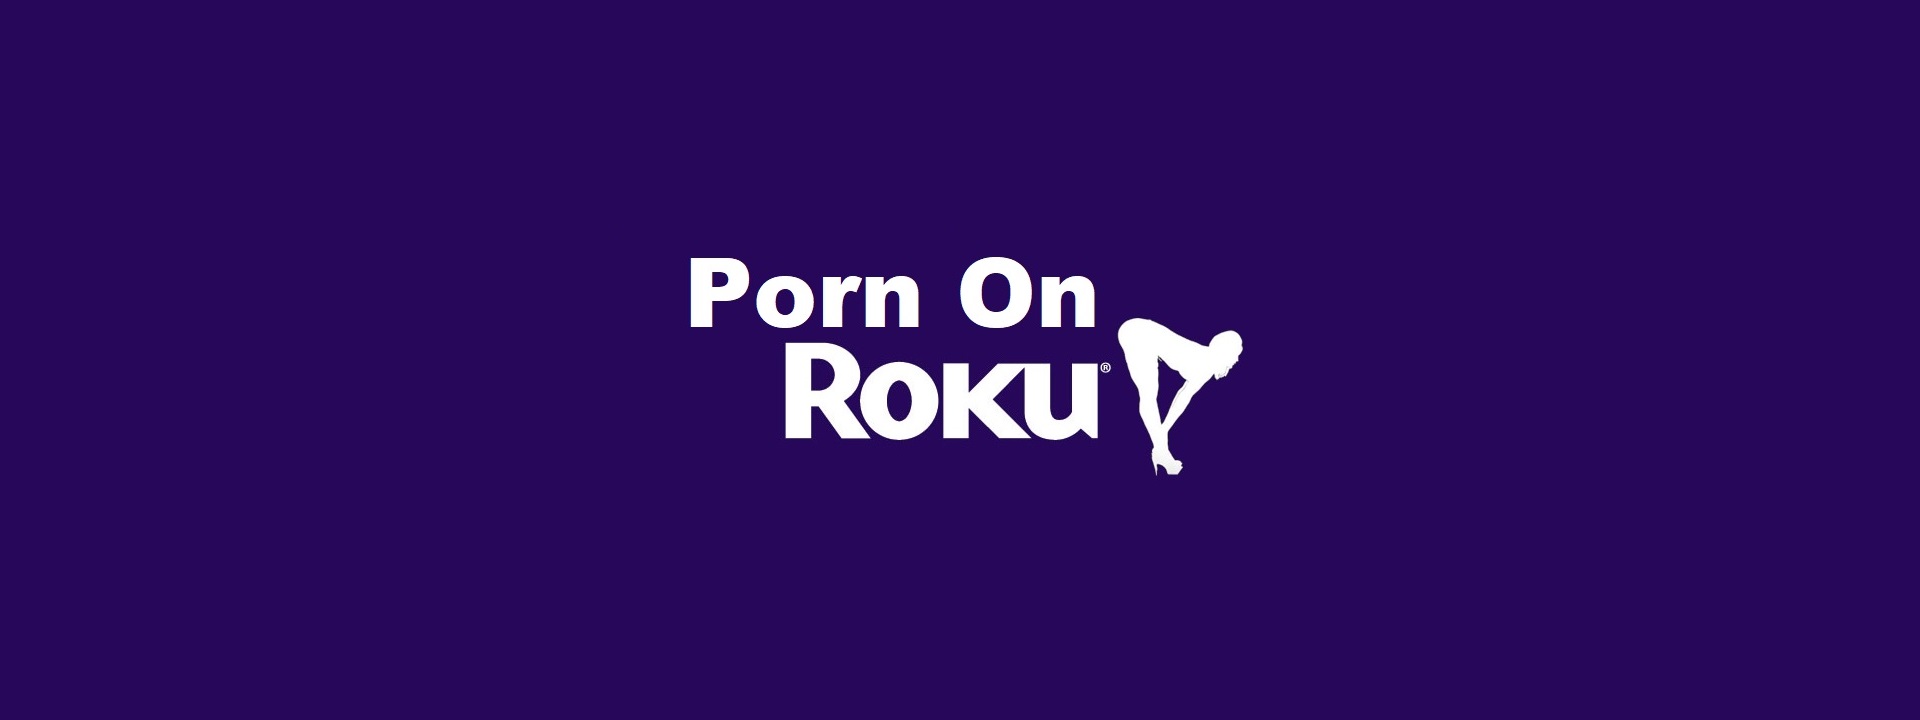 Roku Porn